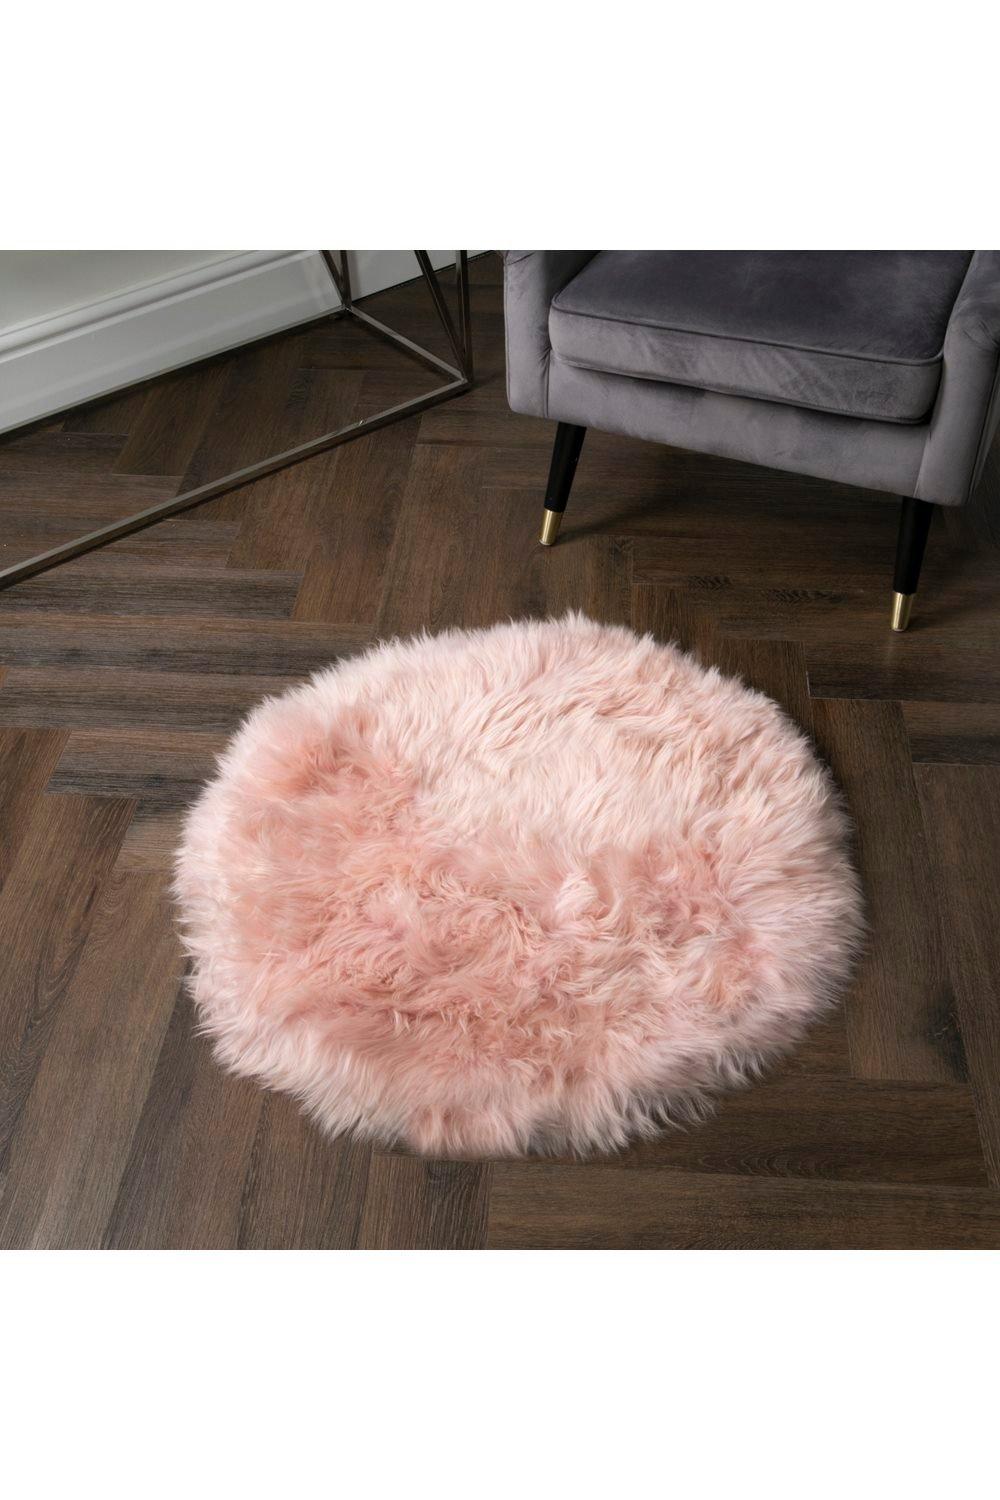 Pink Rectangle Sheepskin - Circle 70cm